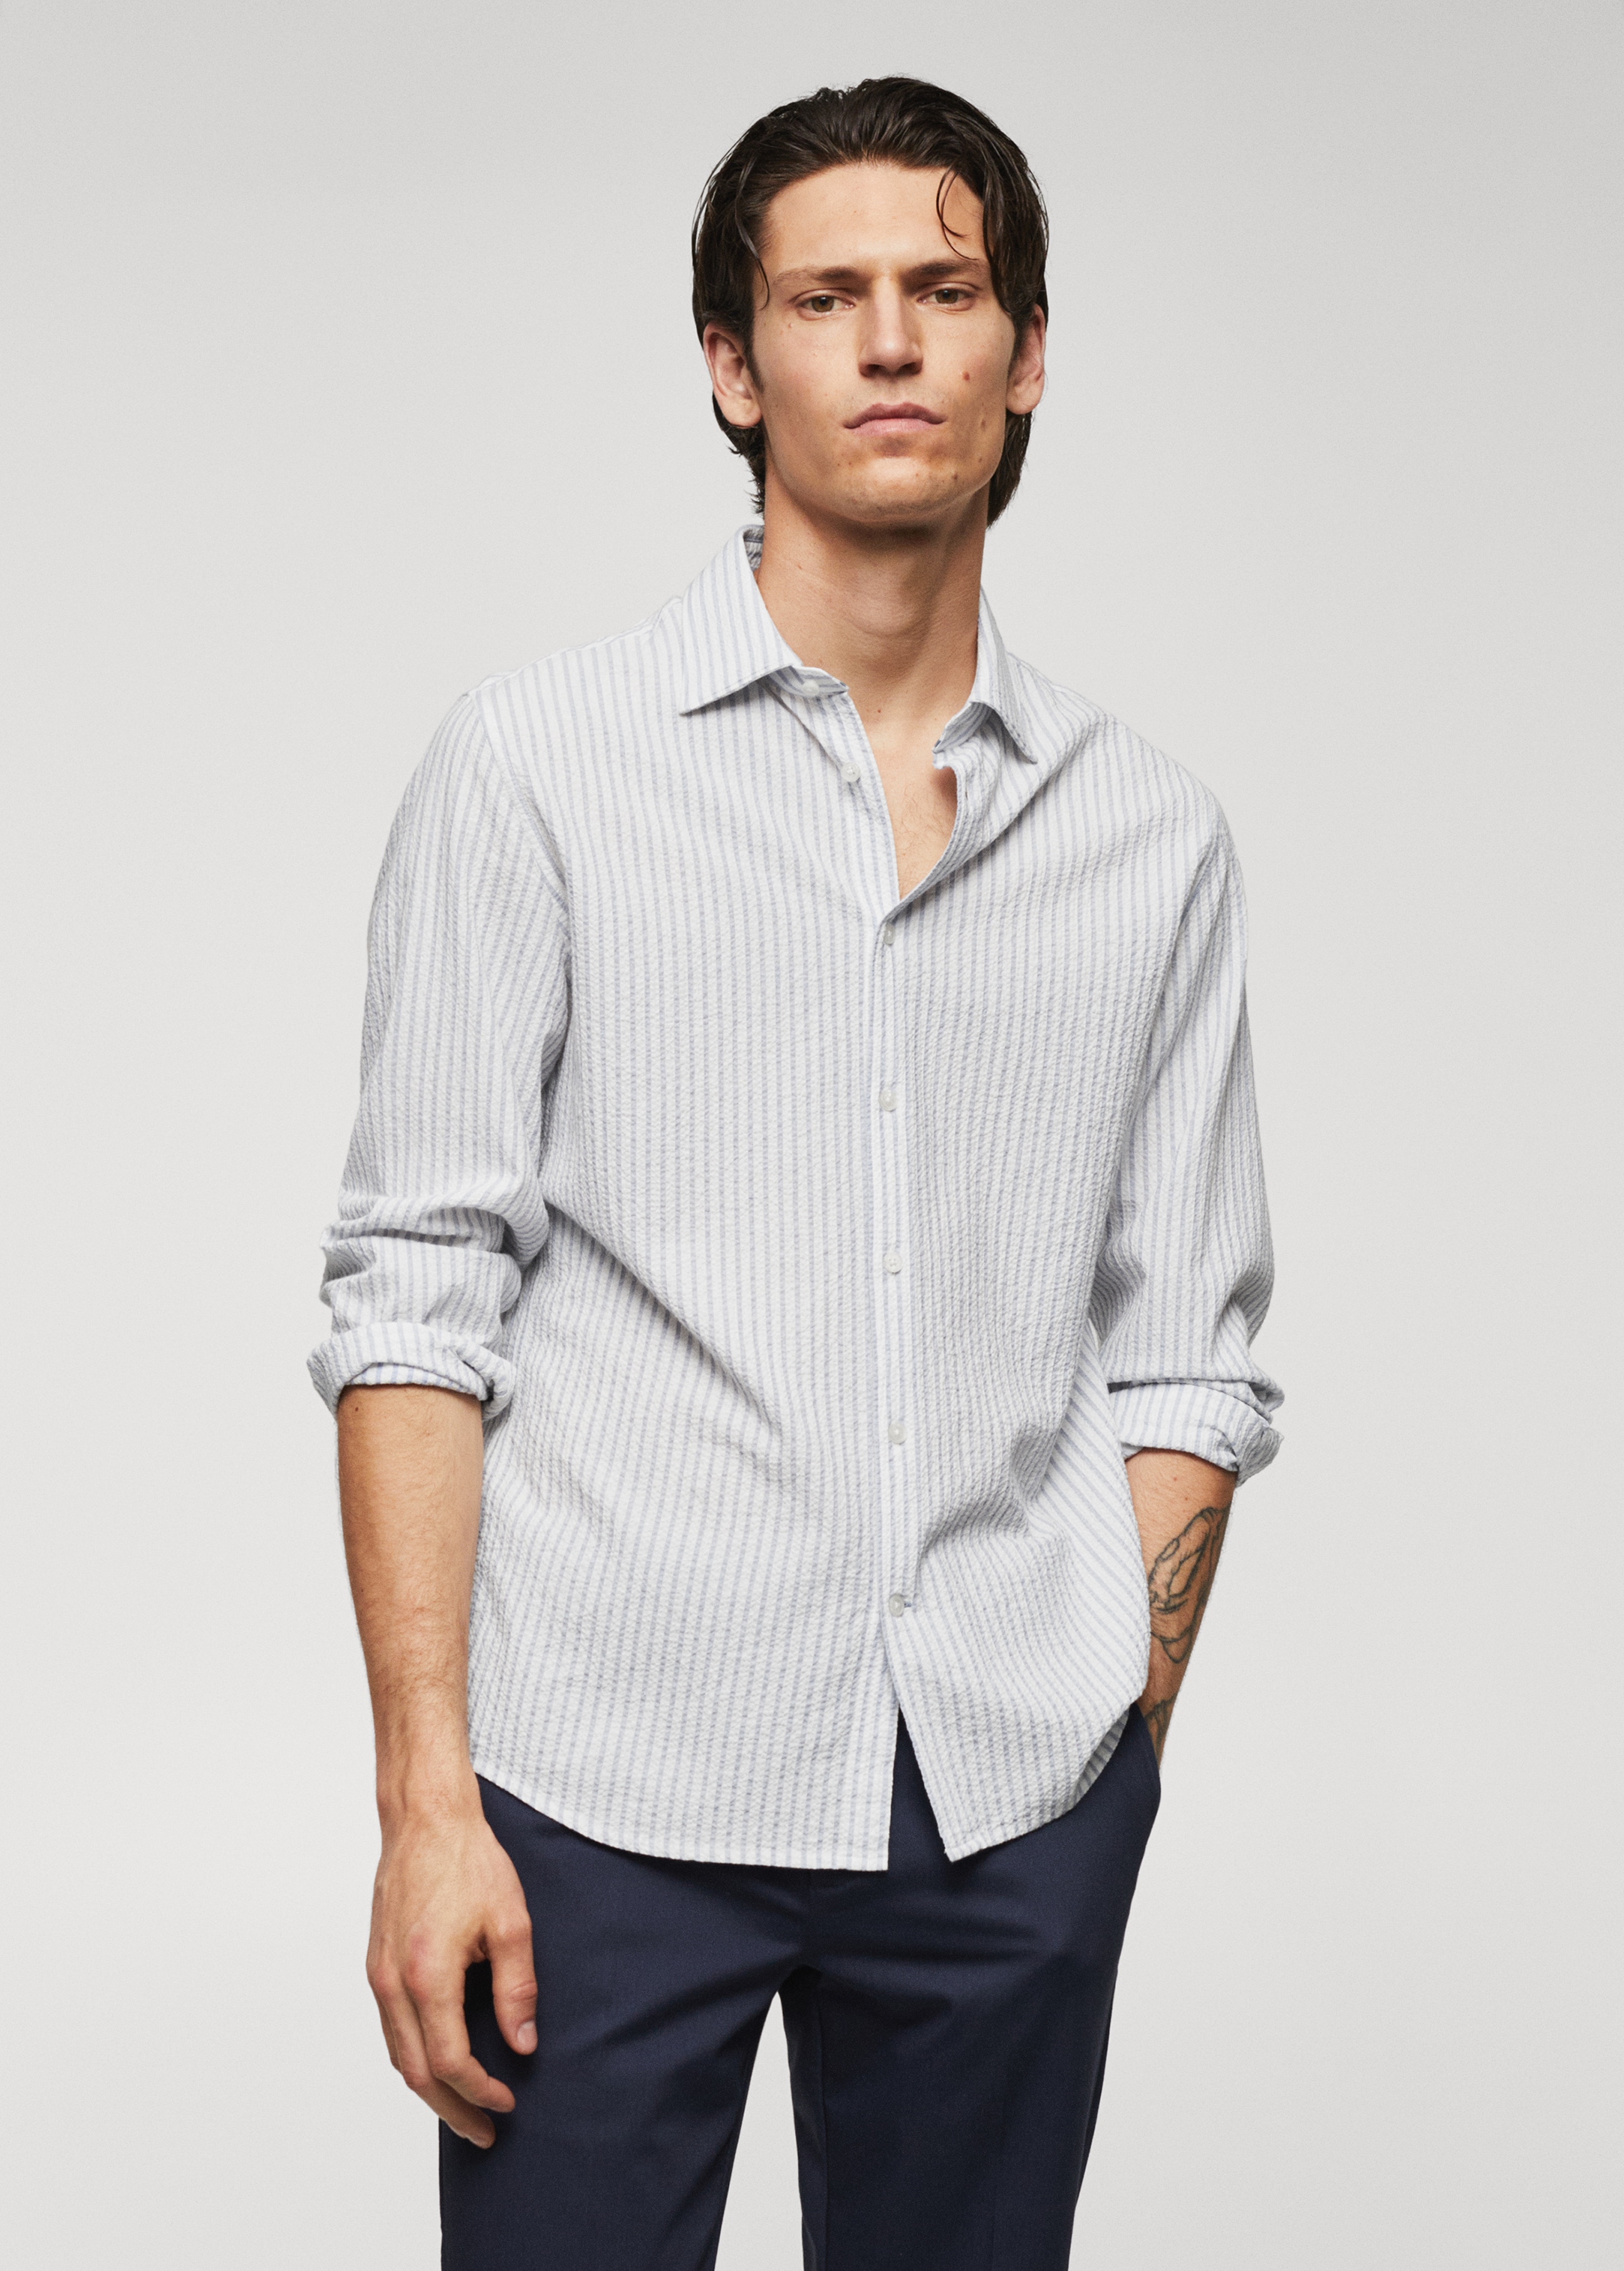 100% cotton seersucker striped shirt - Medium plane